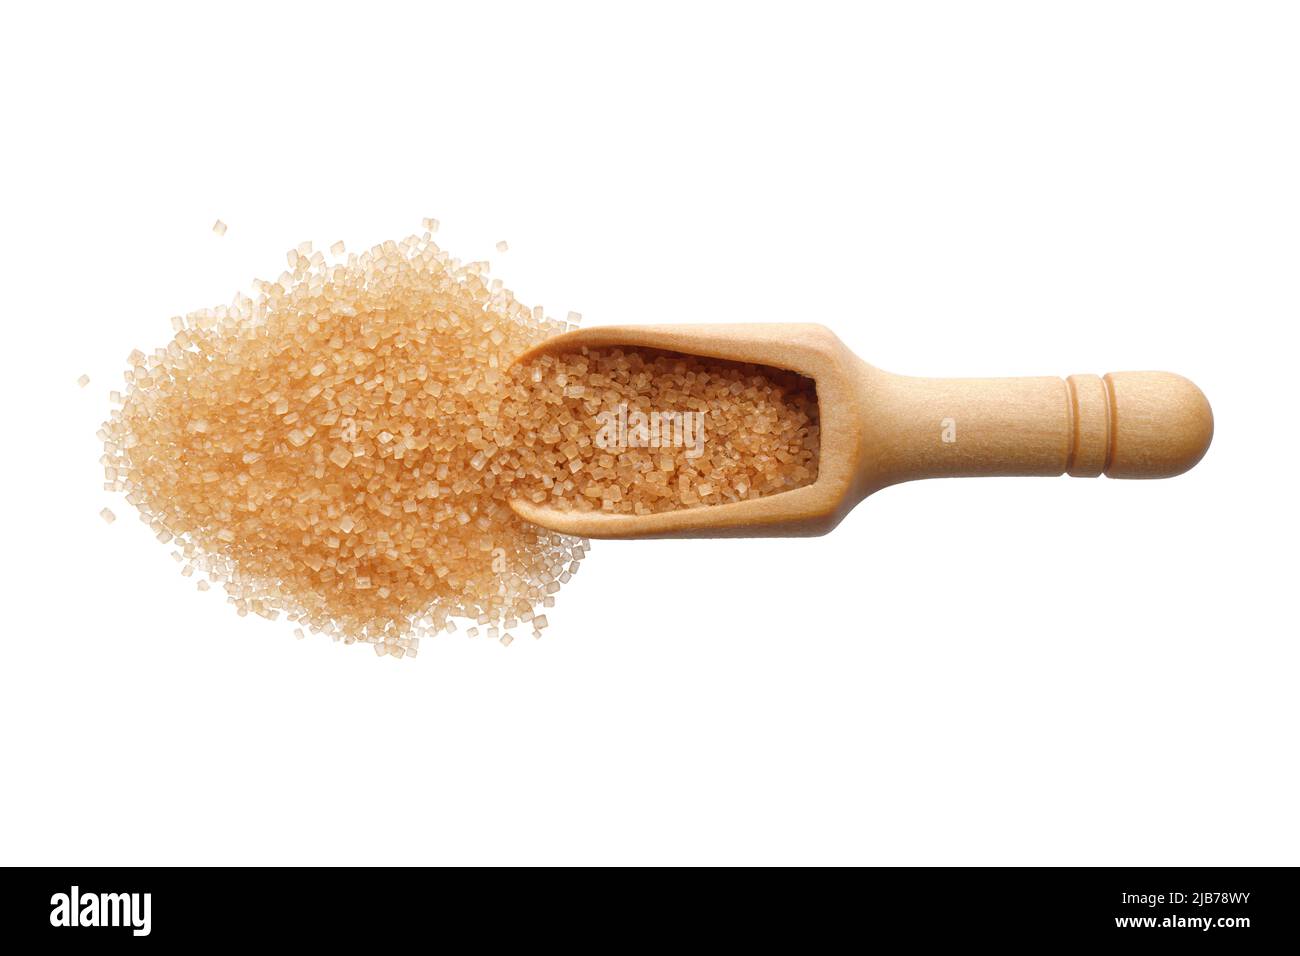 Ingredientes alimentarios: Pila de azúcar de caña demerara en una cuchara de madera, aislada sobre fondo blanco Foto de stock